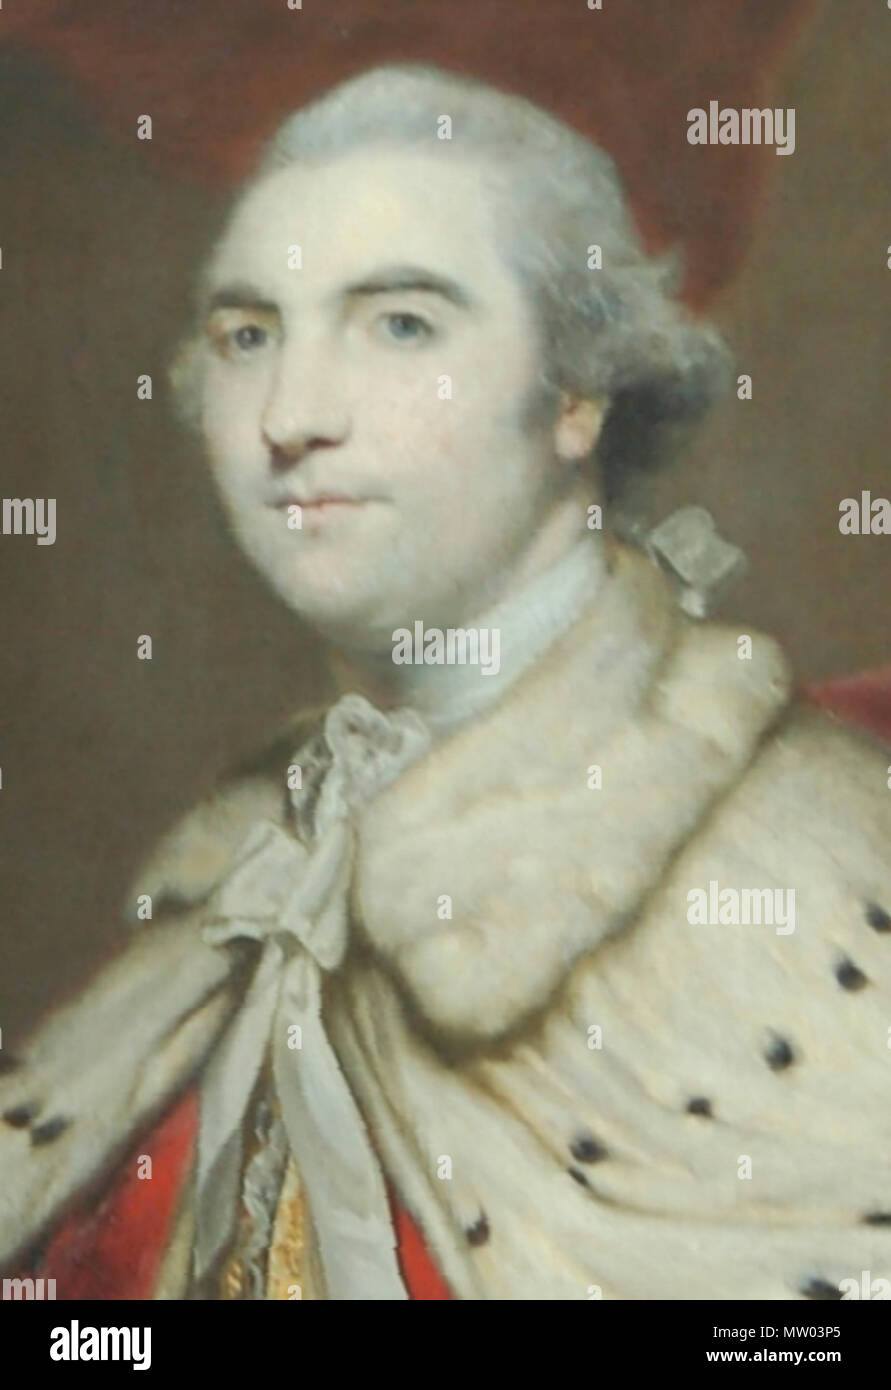 .  = =William Petty (1737-1805), 2 Comte de Shelburne, ancien Premier Ministre du Royaume-Uni (1782-1783). Peint par Sir Joshua Reynolds (1723 - 1792). Du portrait sur l'affichage à Bowood House . 8 avril 2010, 05:47 (UTC). Shelburne.jpg : Inconnu travail dérivé : Adam sk (talk) 554 recadrée Shelburne Banque D'Images